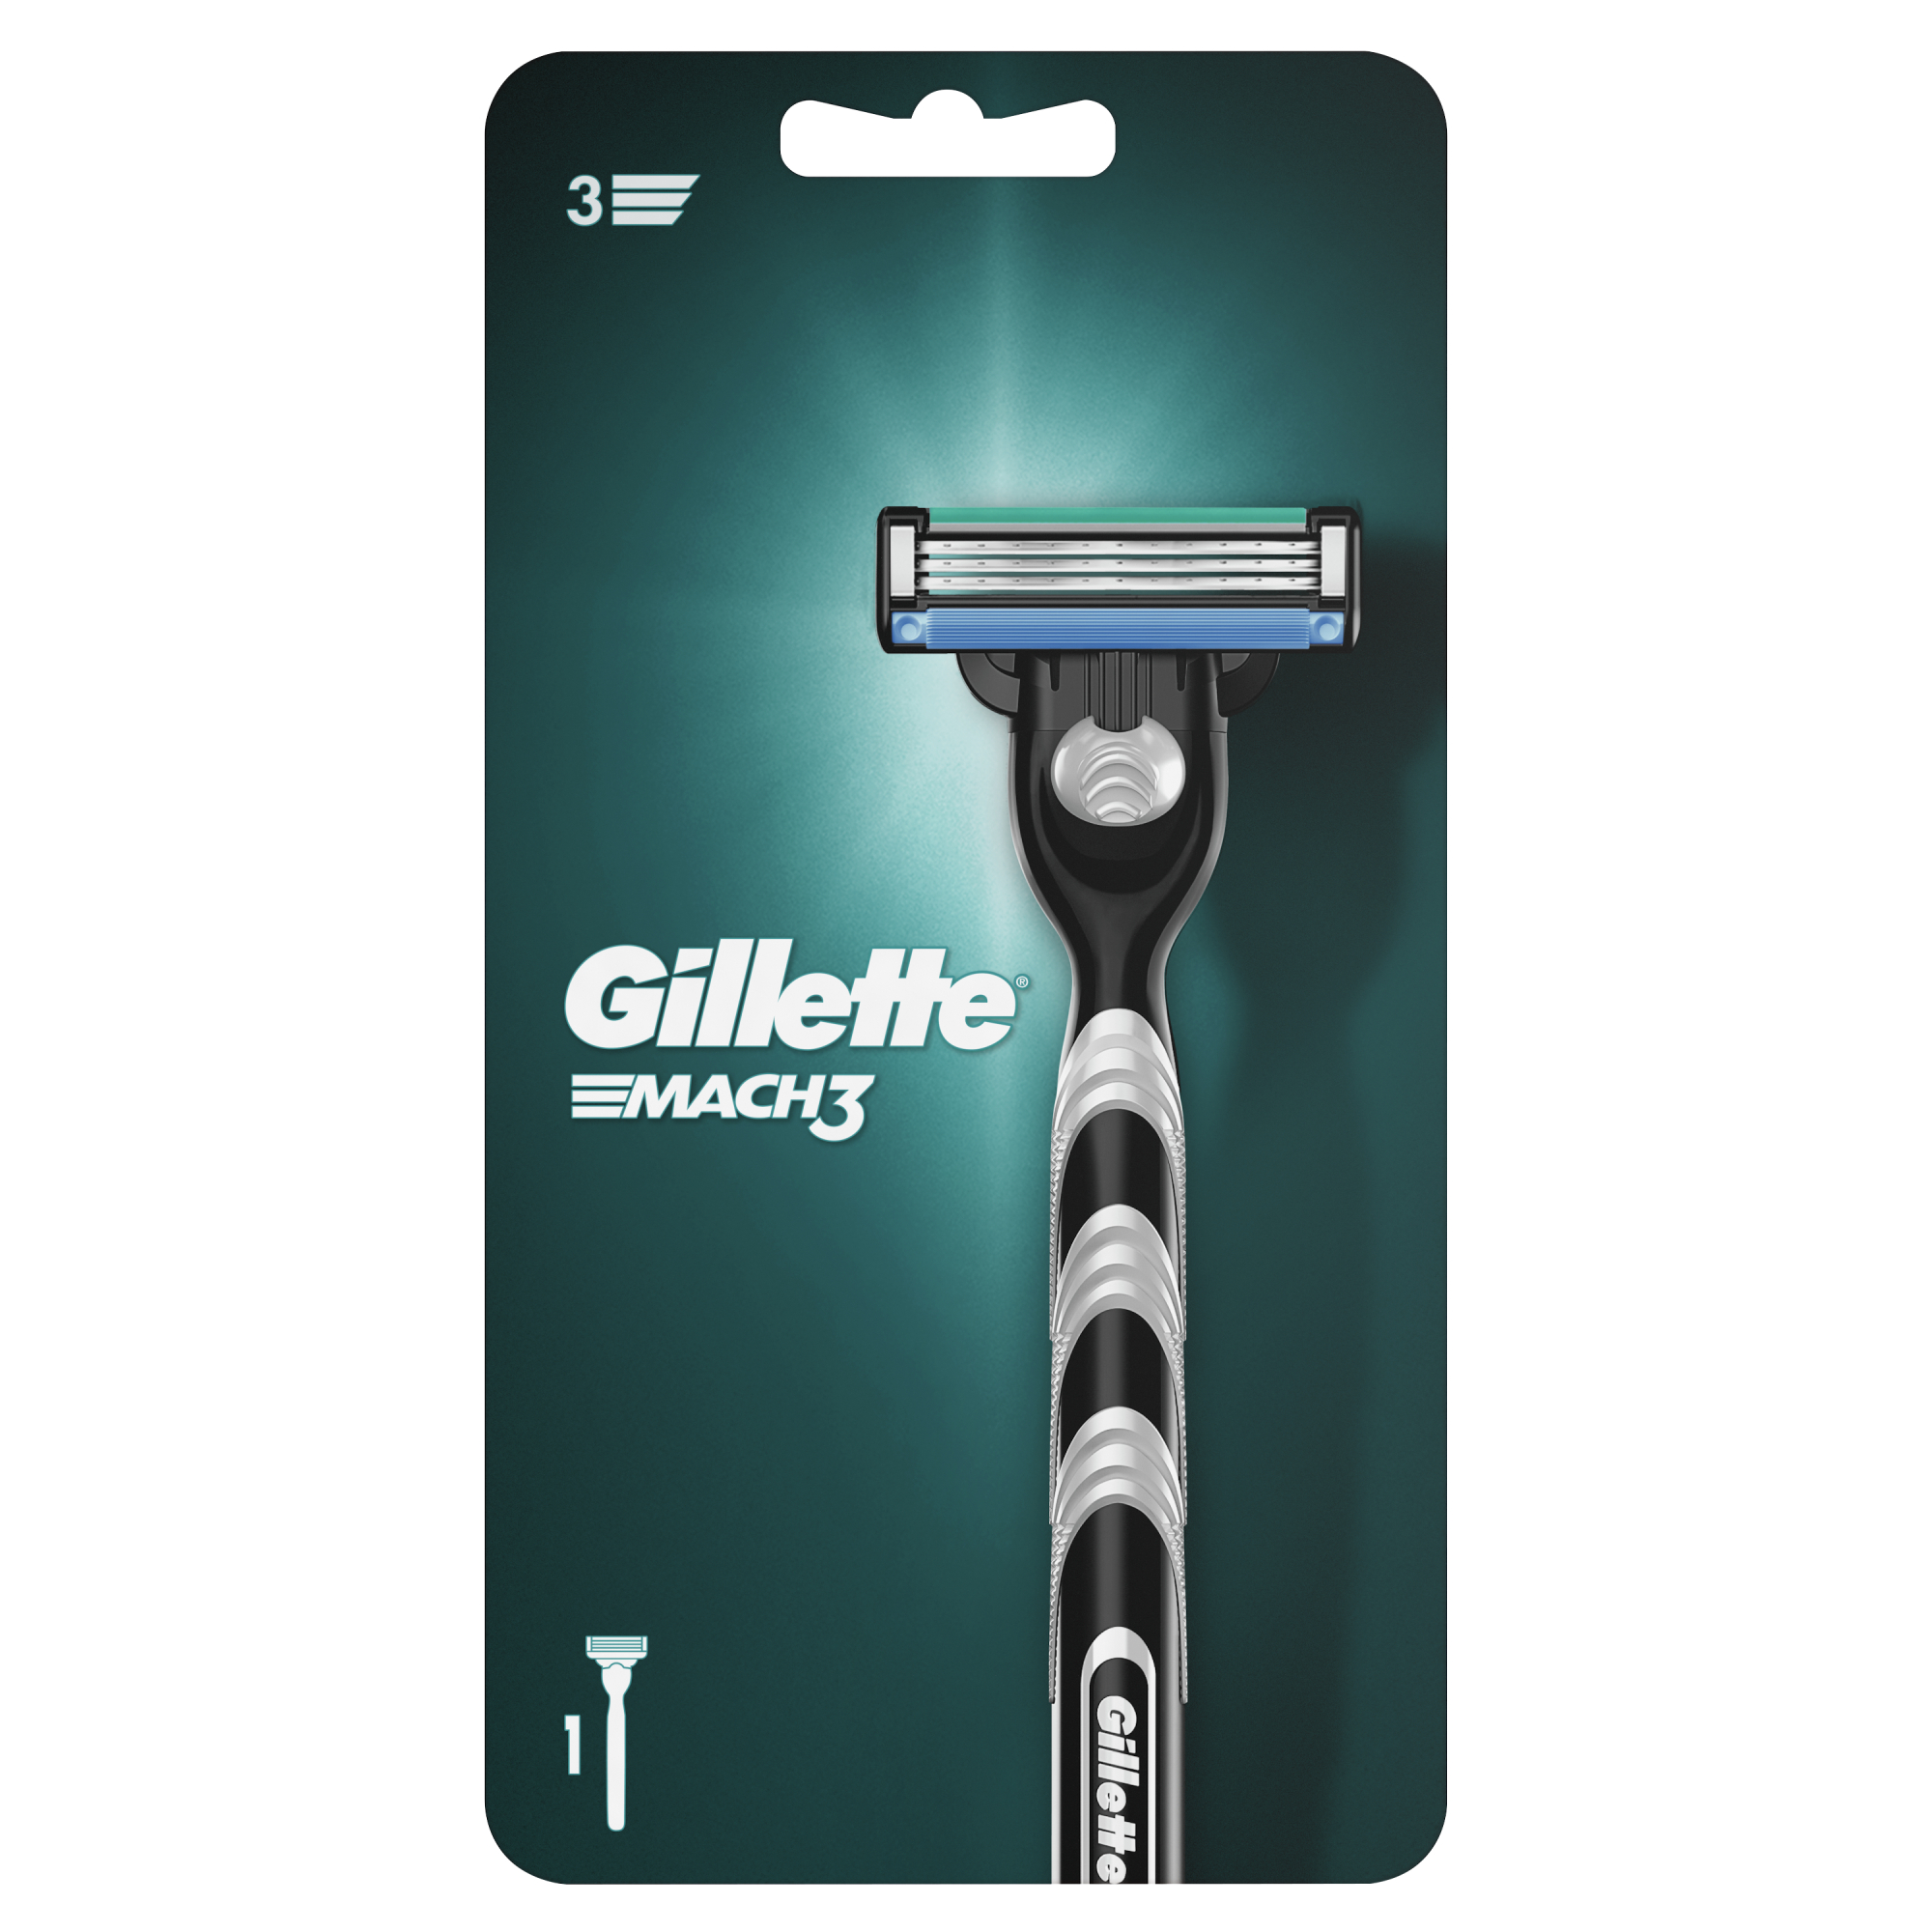 Мужская бритва Gillette Mach3, 1 кассета, с 3 лезвиями, прочнее, чем сталь, для точного бритья wilder станок для бритья мужской бритва мужская многоразовая man a5l 1